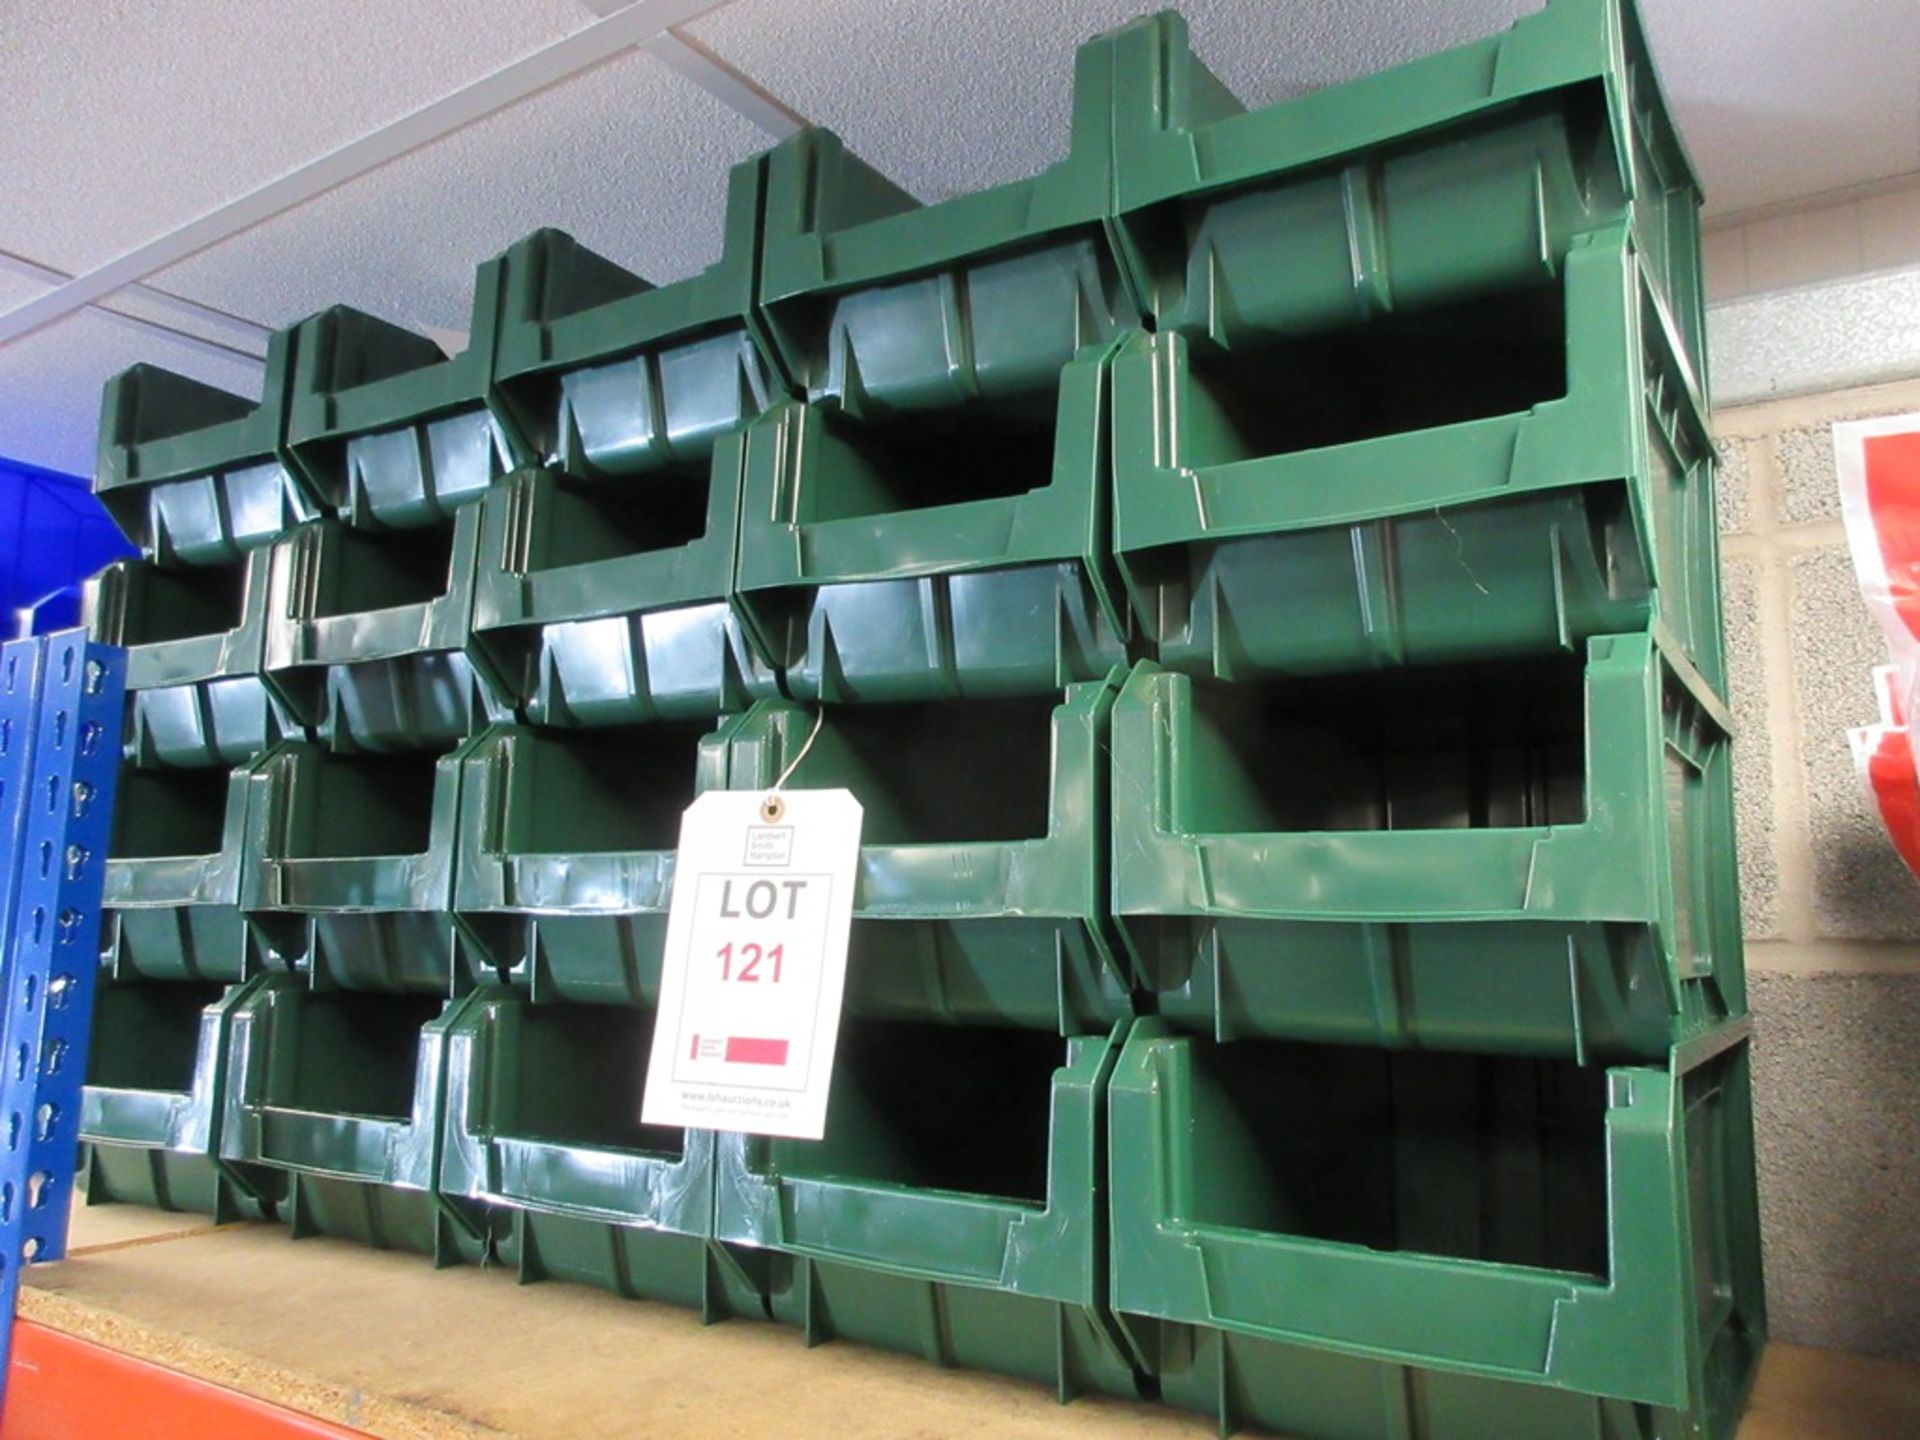 Twenty Green storage bins